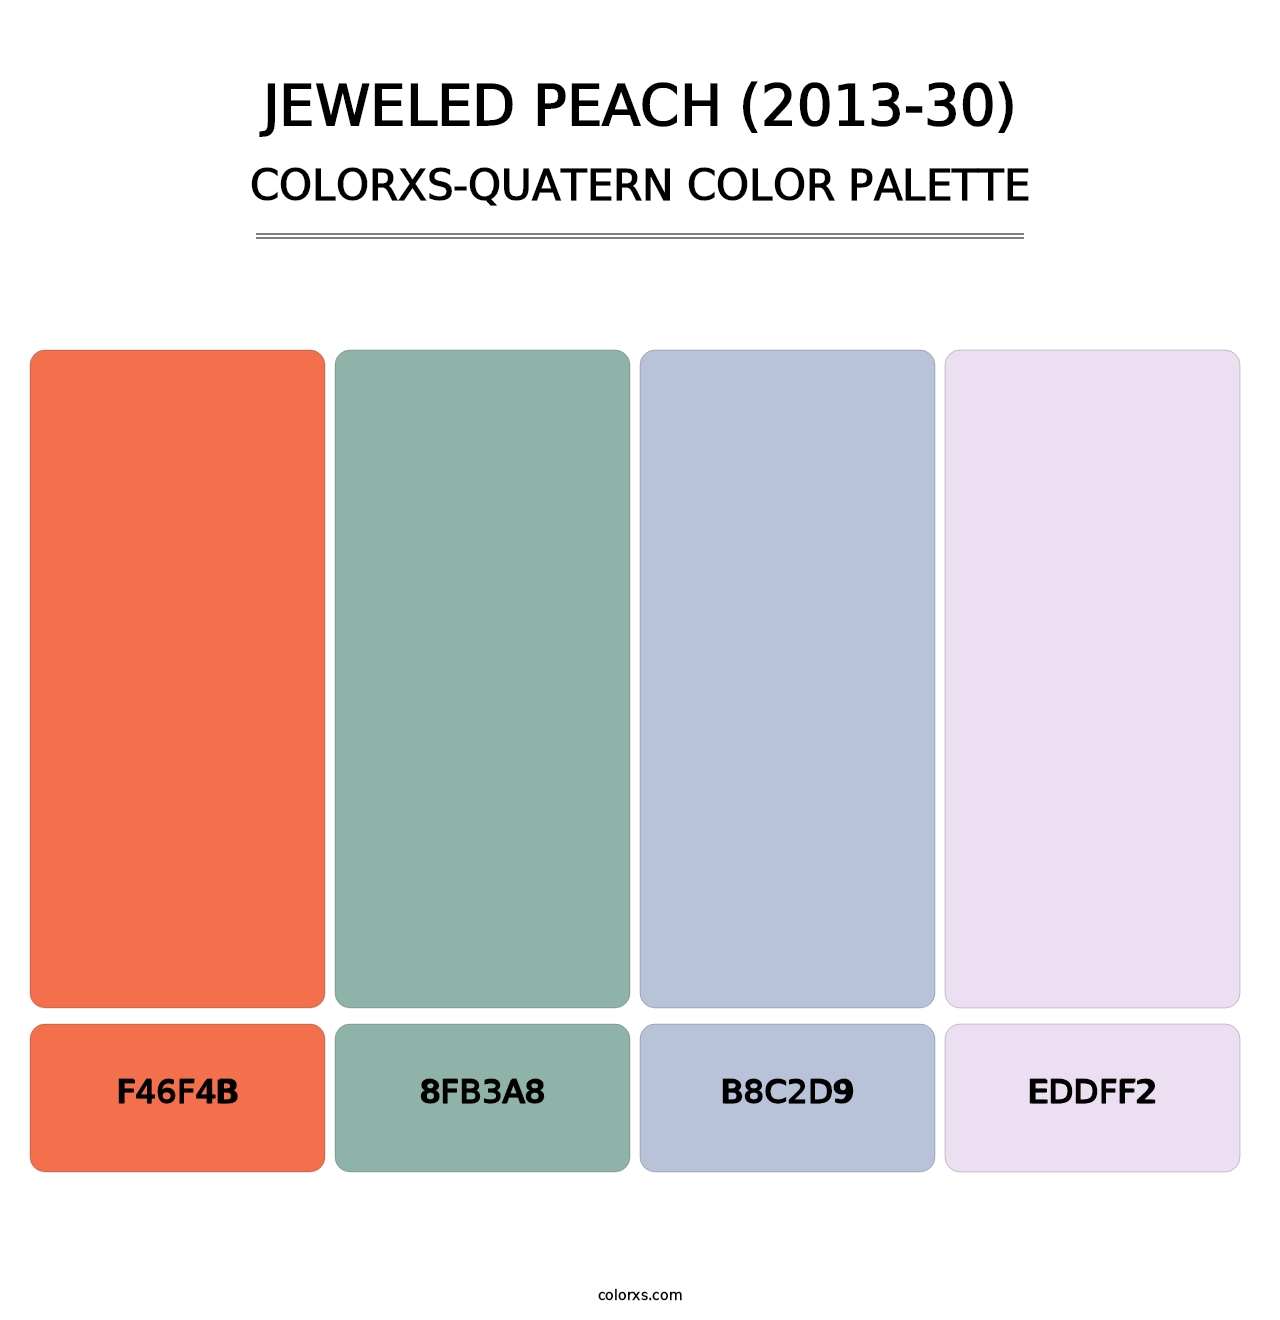 Jeweled Peach (2013-30) - Colorxs Quatern Palette